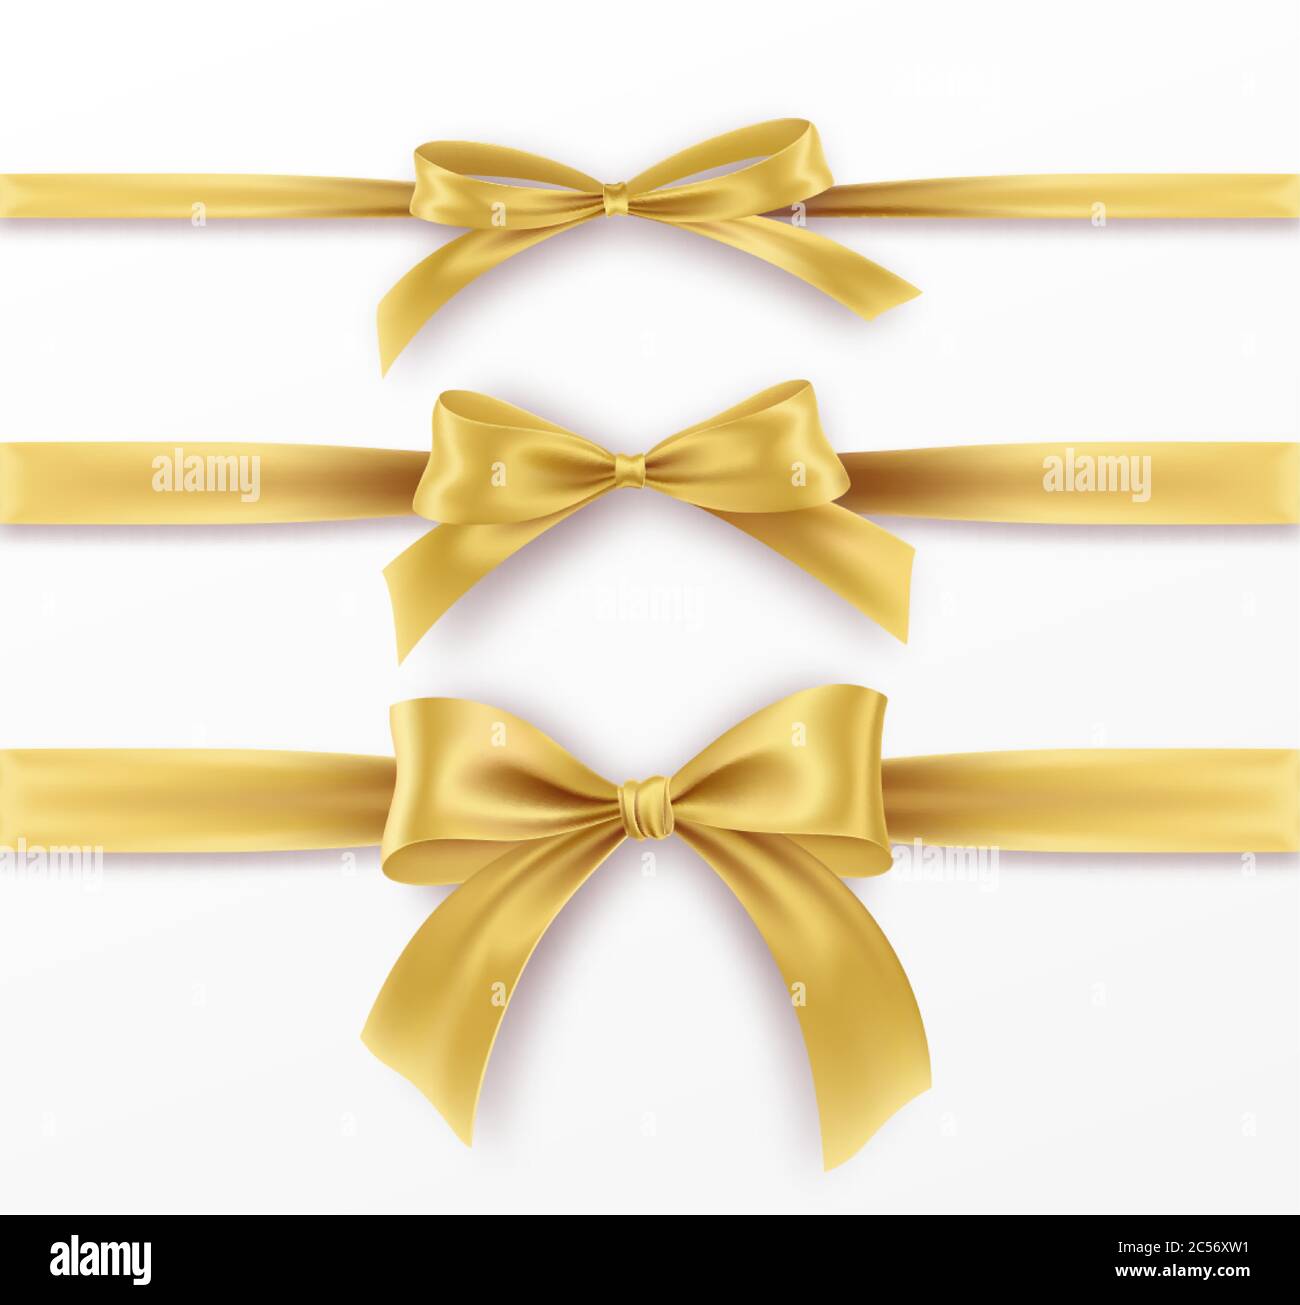 Impostare Golden Bow e Ribbon su sfondo bianco. Arco d'oro realistico per il design della decorazione cornice per le vacanze, bordo. Illustrazione vettoriale Illustrazione Vettoriale